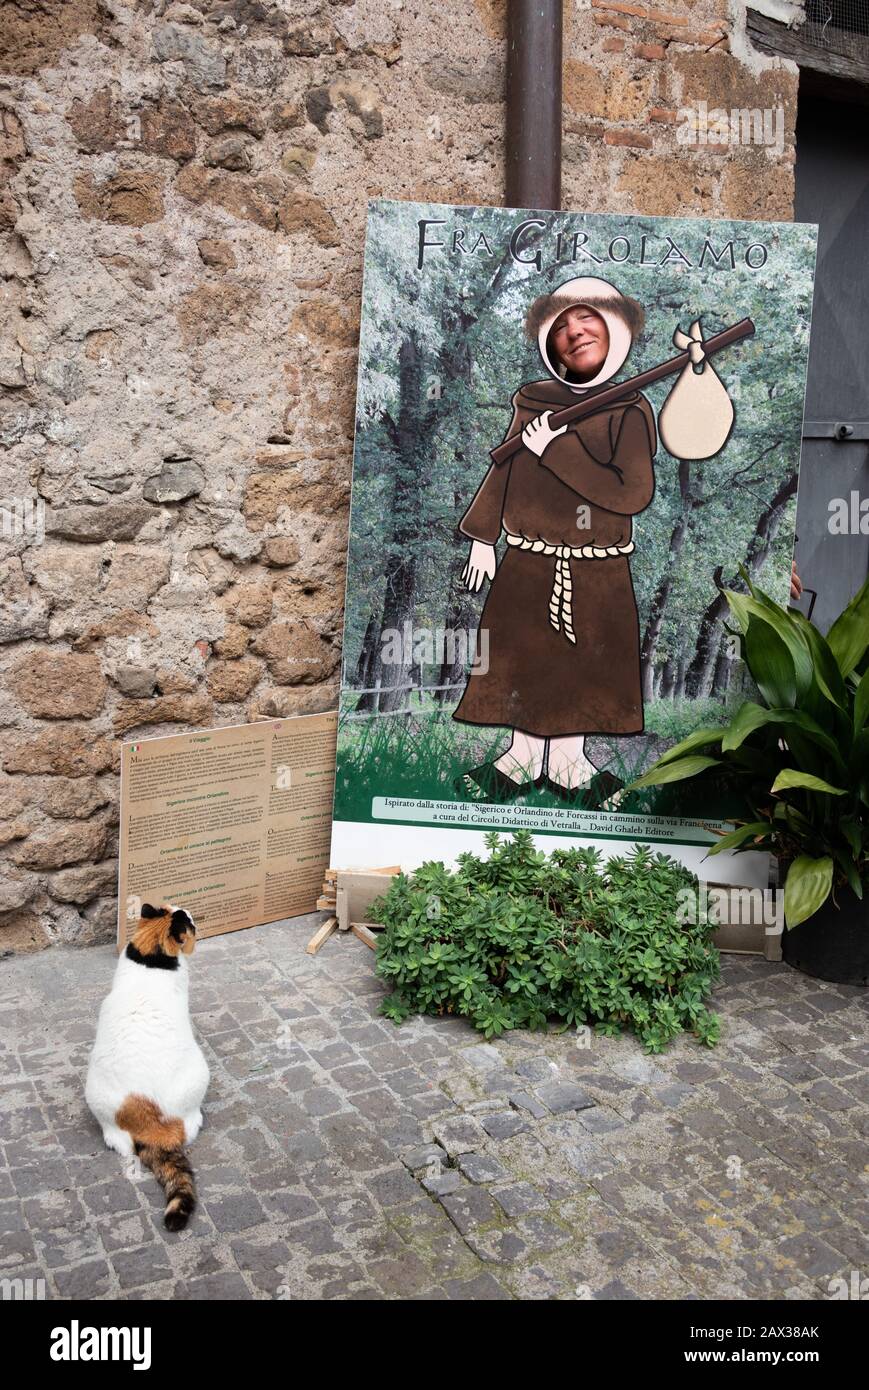 Unbeschwertes Gesicht im Lochbrett mit Kopf und Katze, die auf sie blicken. Vetralla. FRA girolamo Savonarola, Dominikanischer Friar und puritanischer Fanatiker. Stockfoto